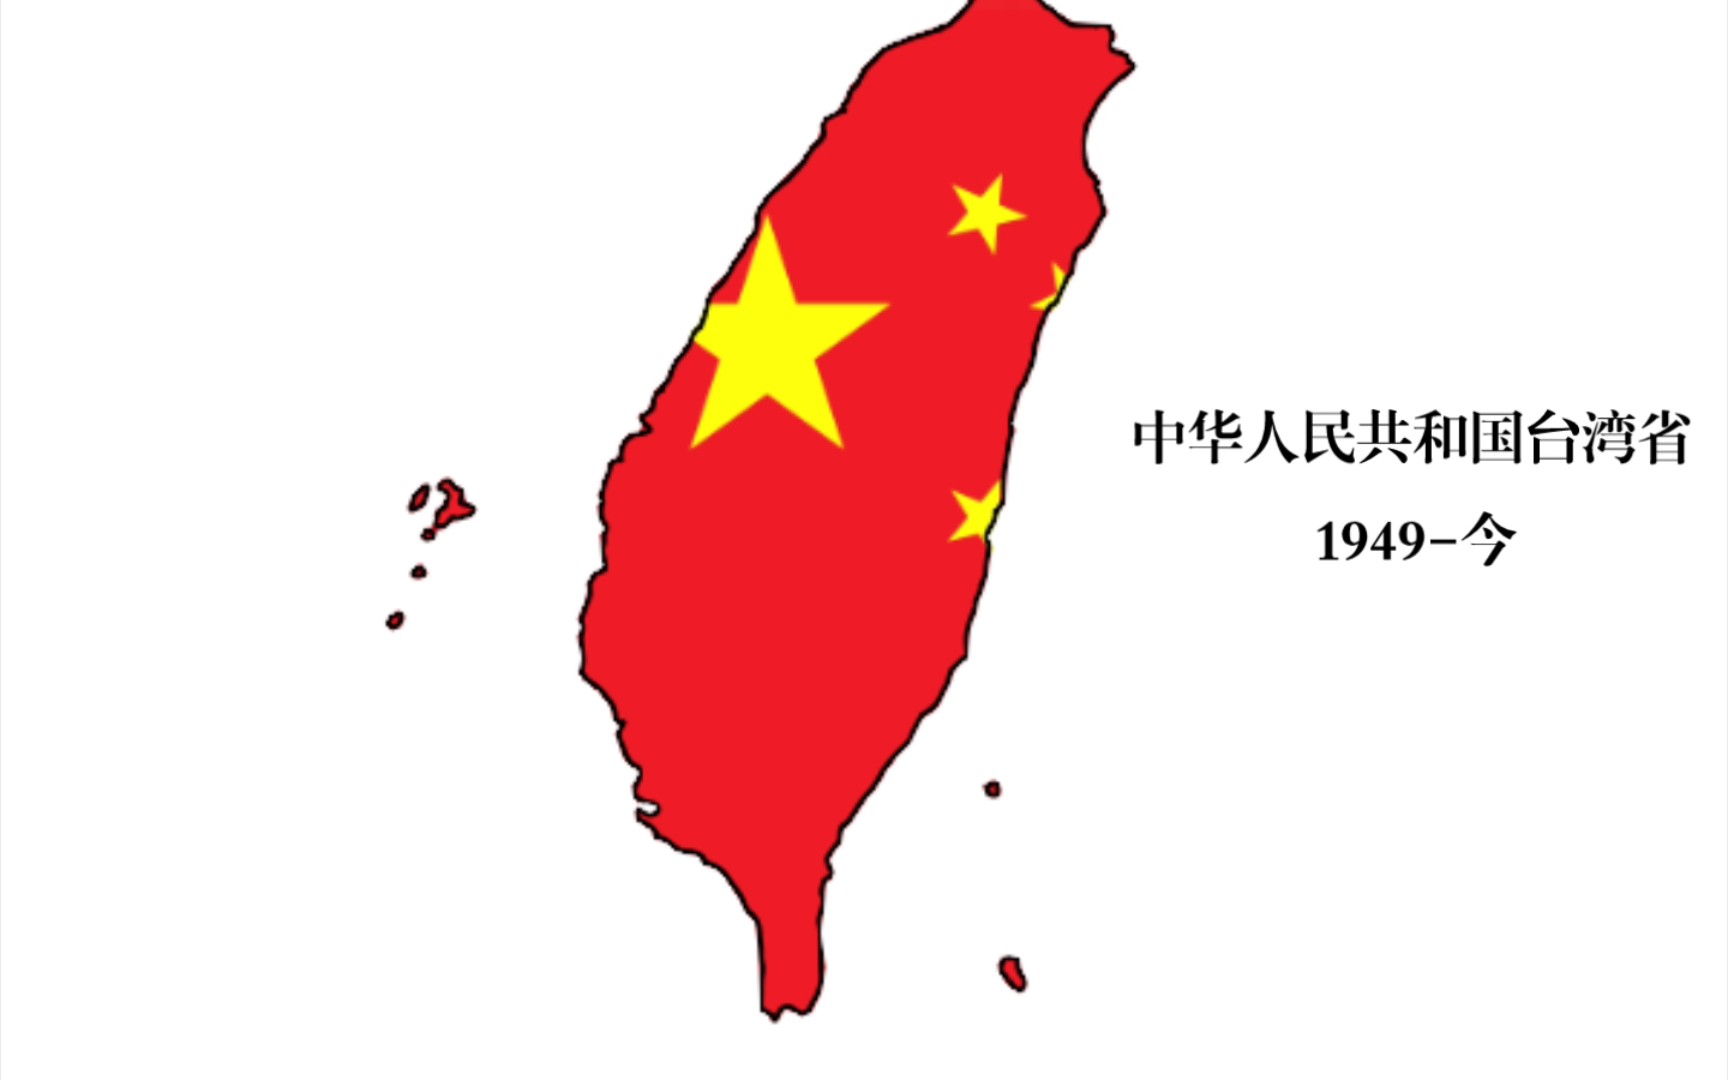 中国台湾地区 退化史